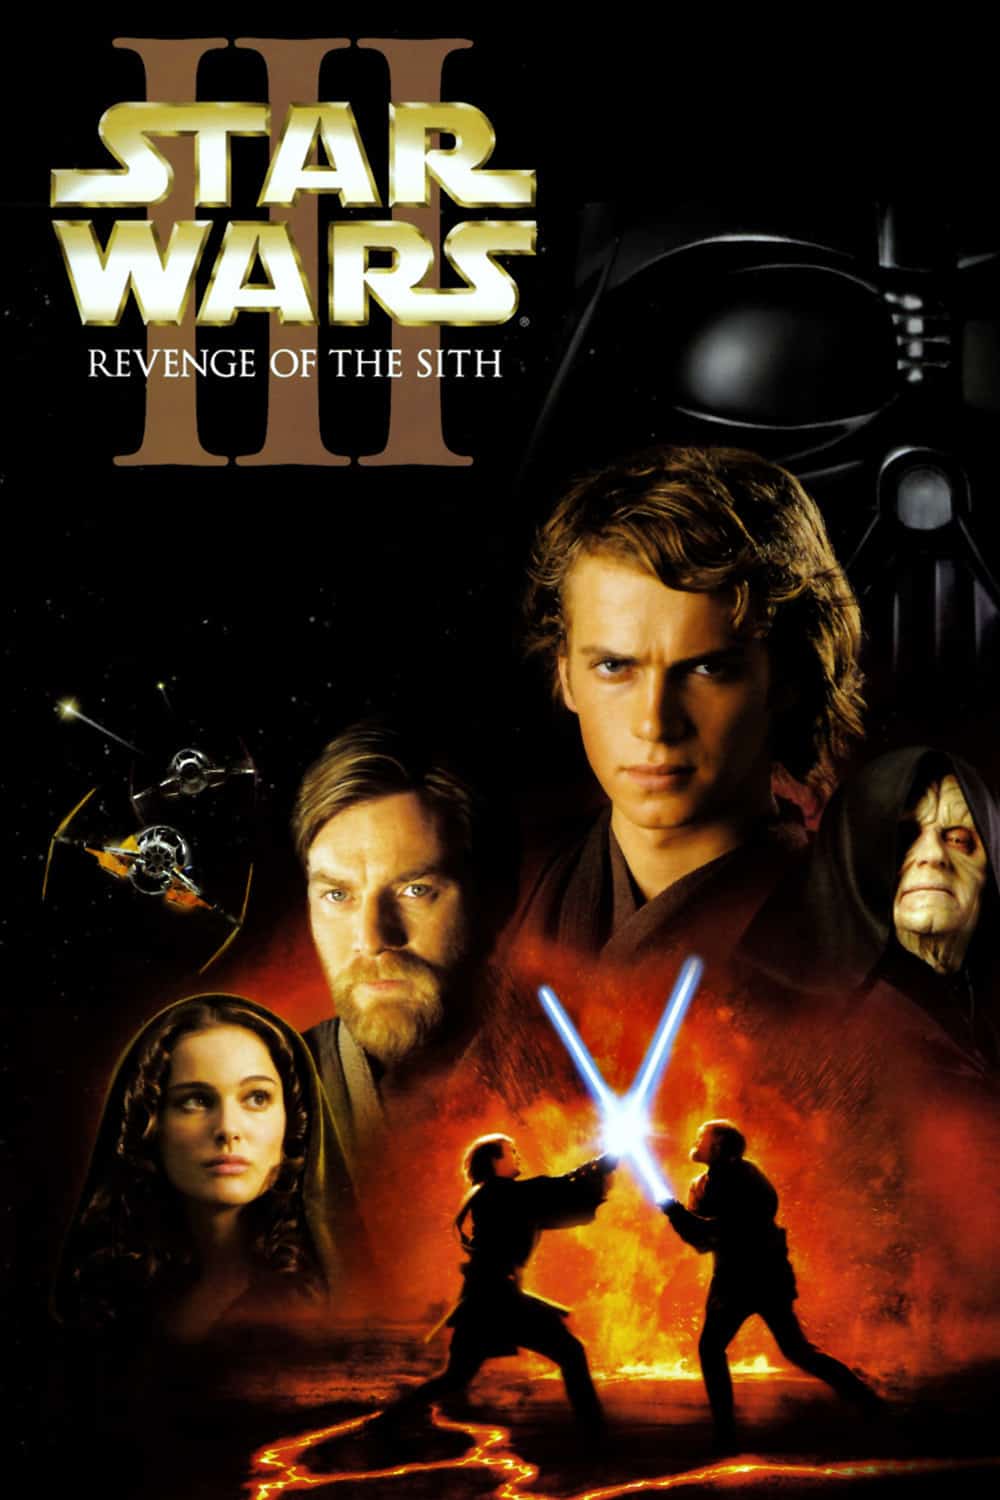 Star Wars: Episode III - Revenge of the Sith (2005) - IMDb